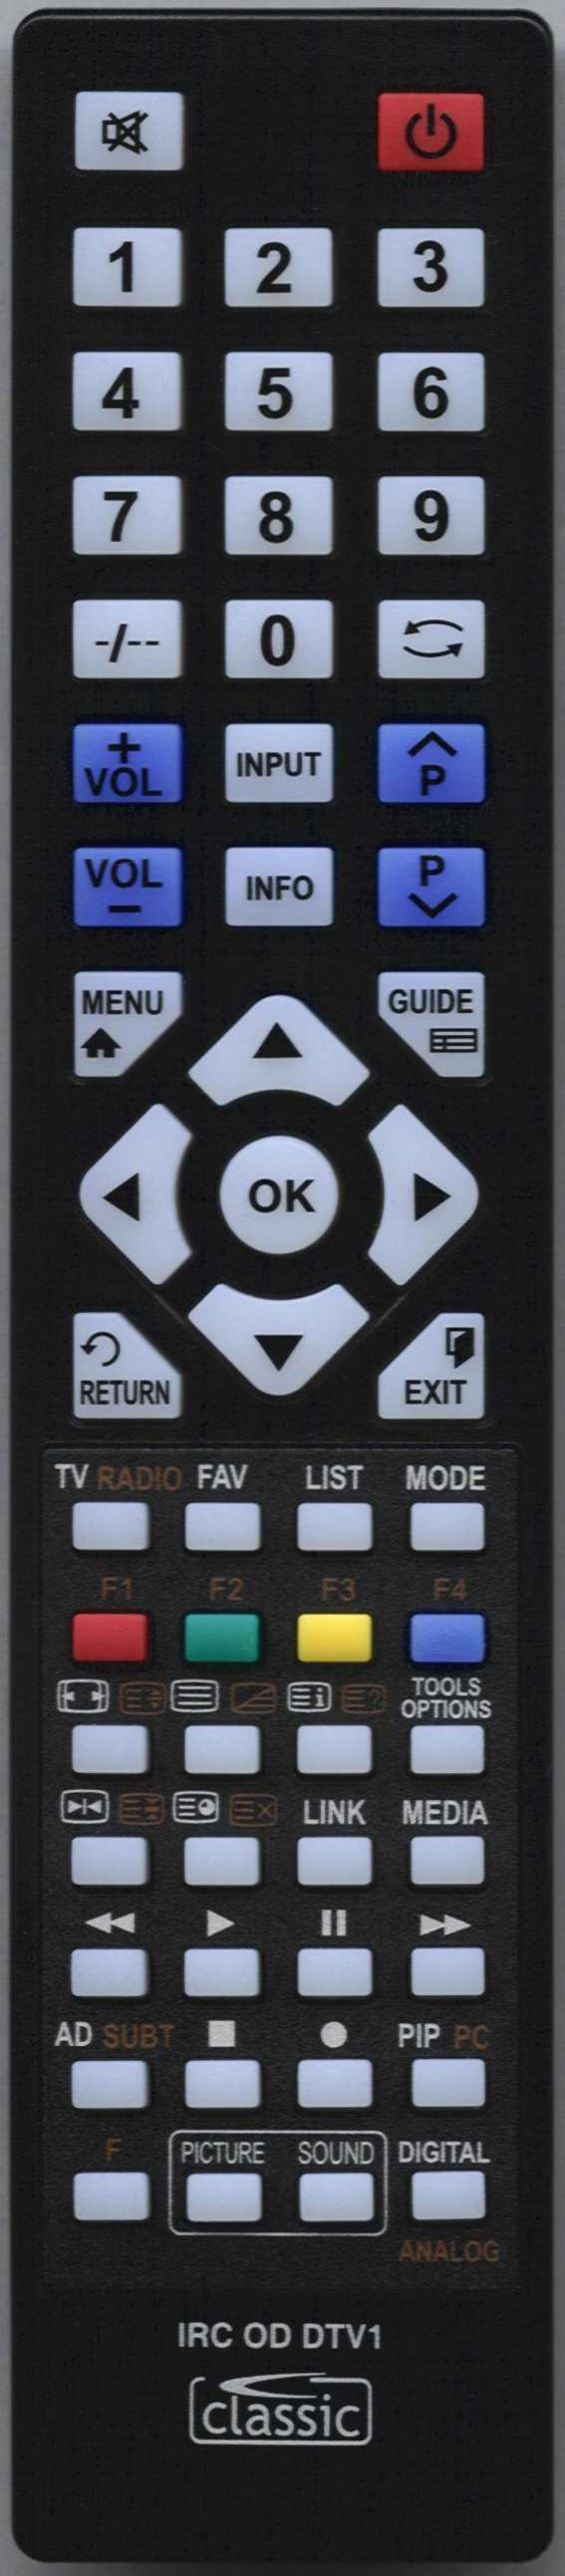 LUXOR 10043167 Remote Control Alternative